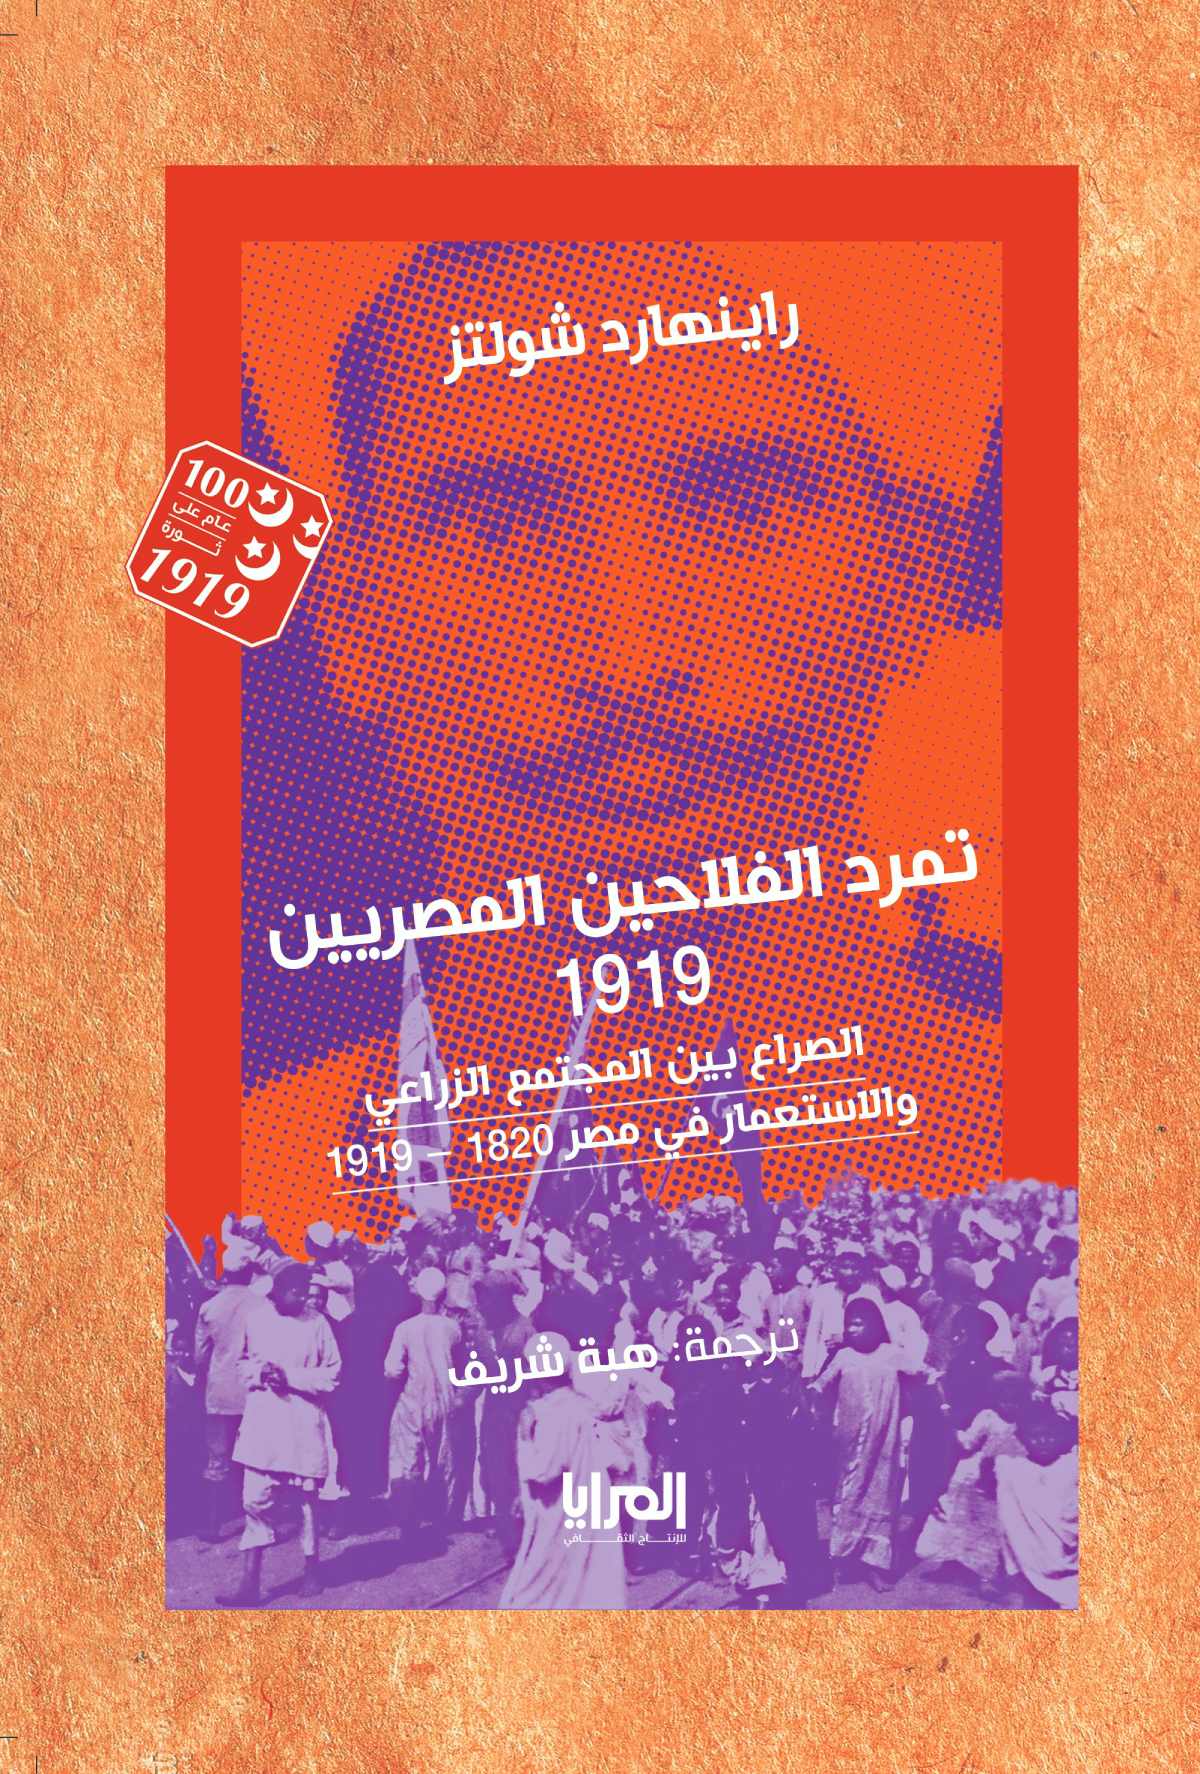 تمرد الفلاحين المصريين – 1919 الصراع بين المجتمع الزراعي والاستعمار في مصر